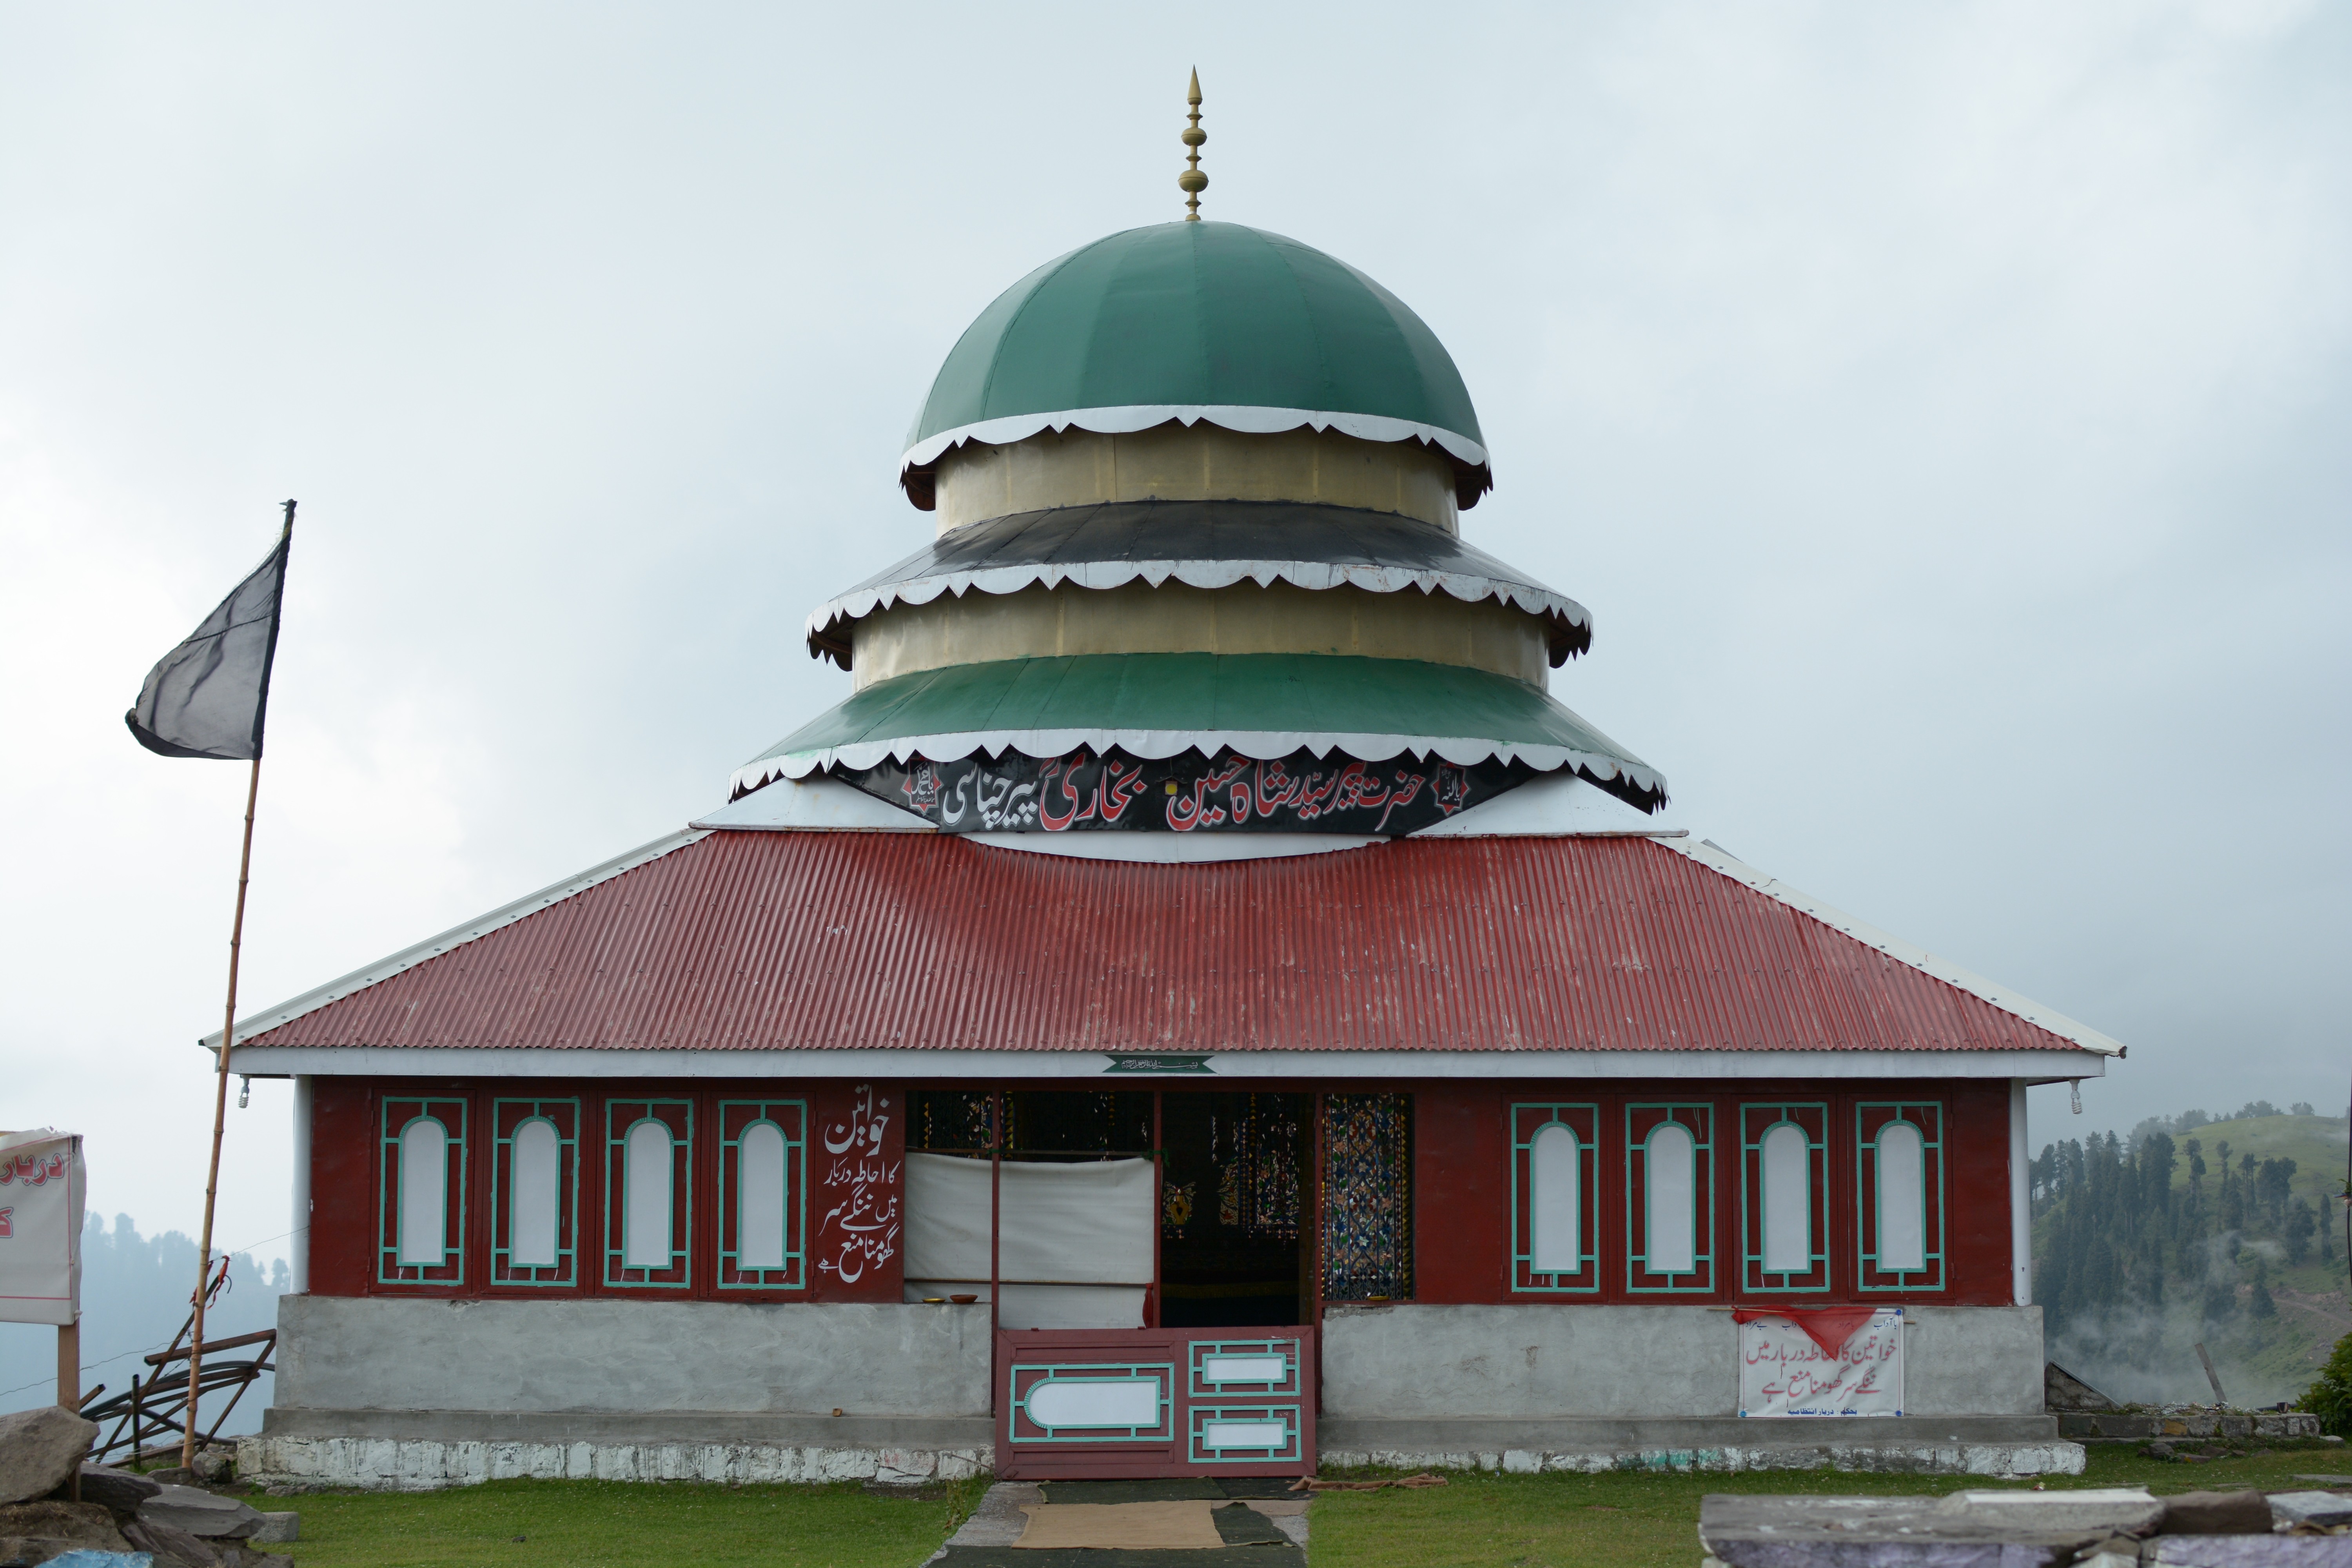 Pir Chinasi, a shrine and a tourist destination